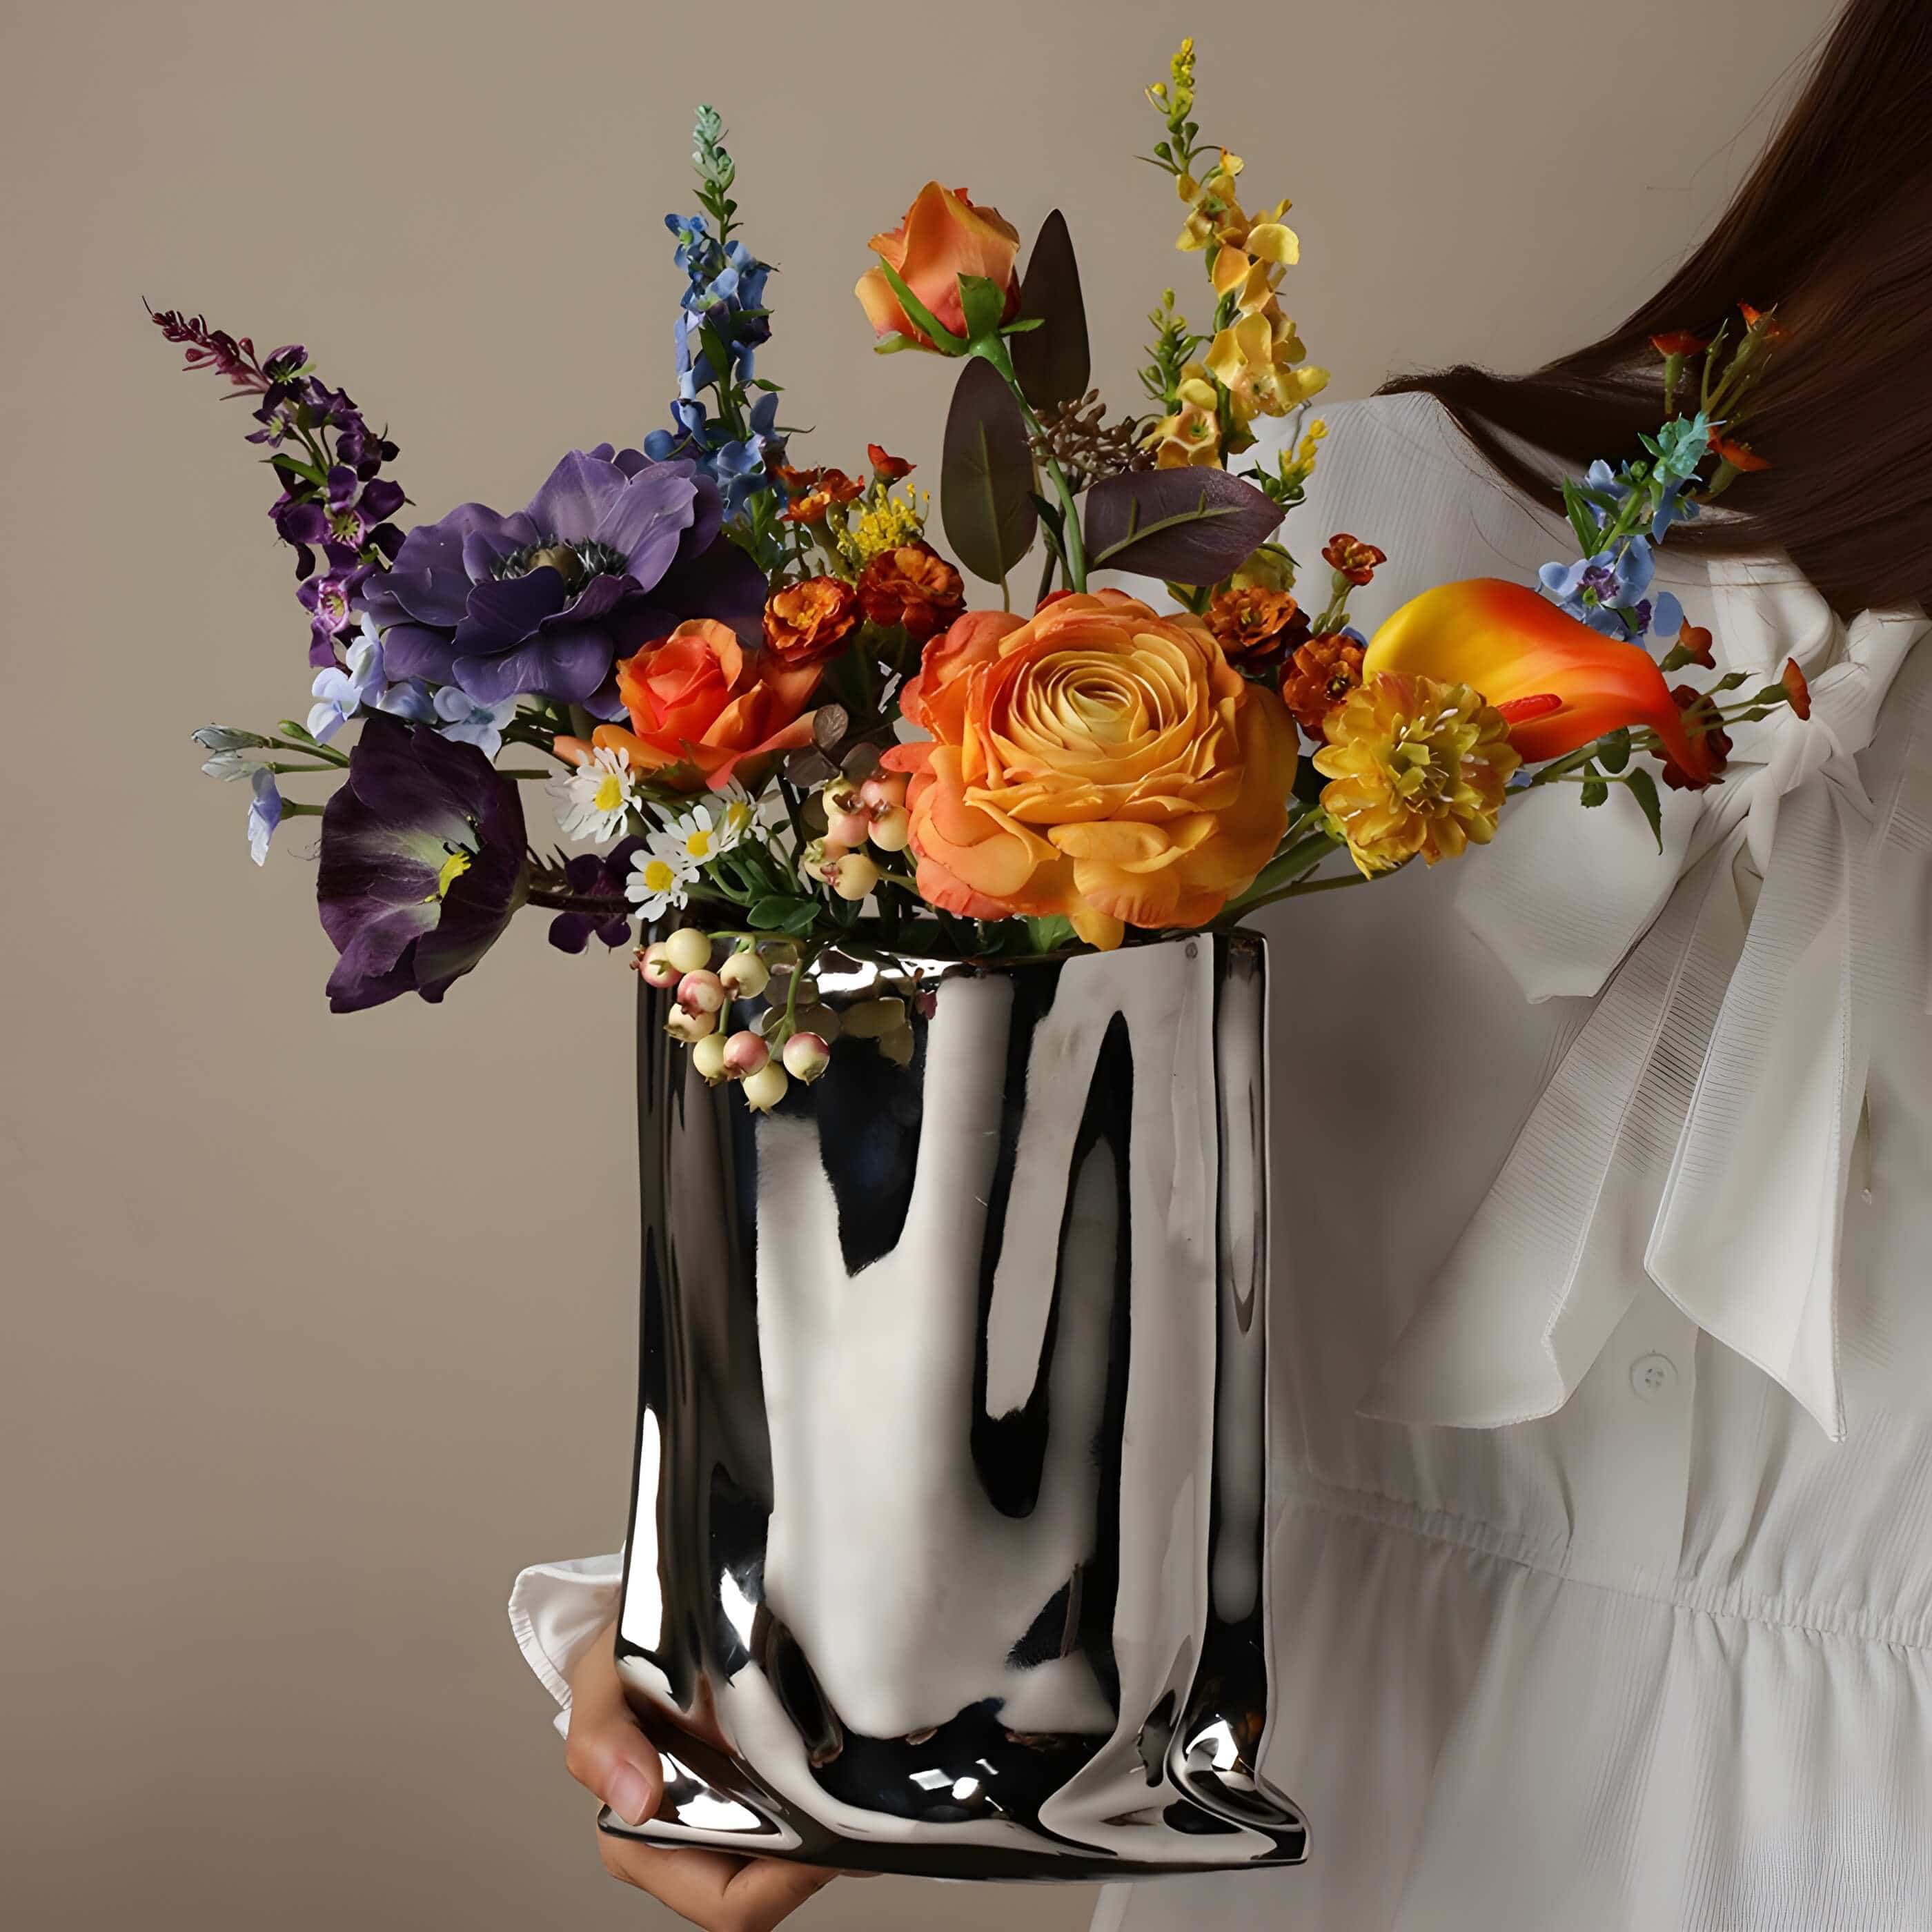 'Takeaway' vase